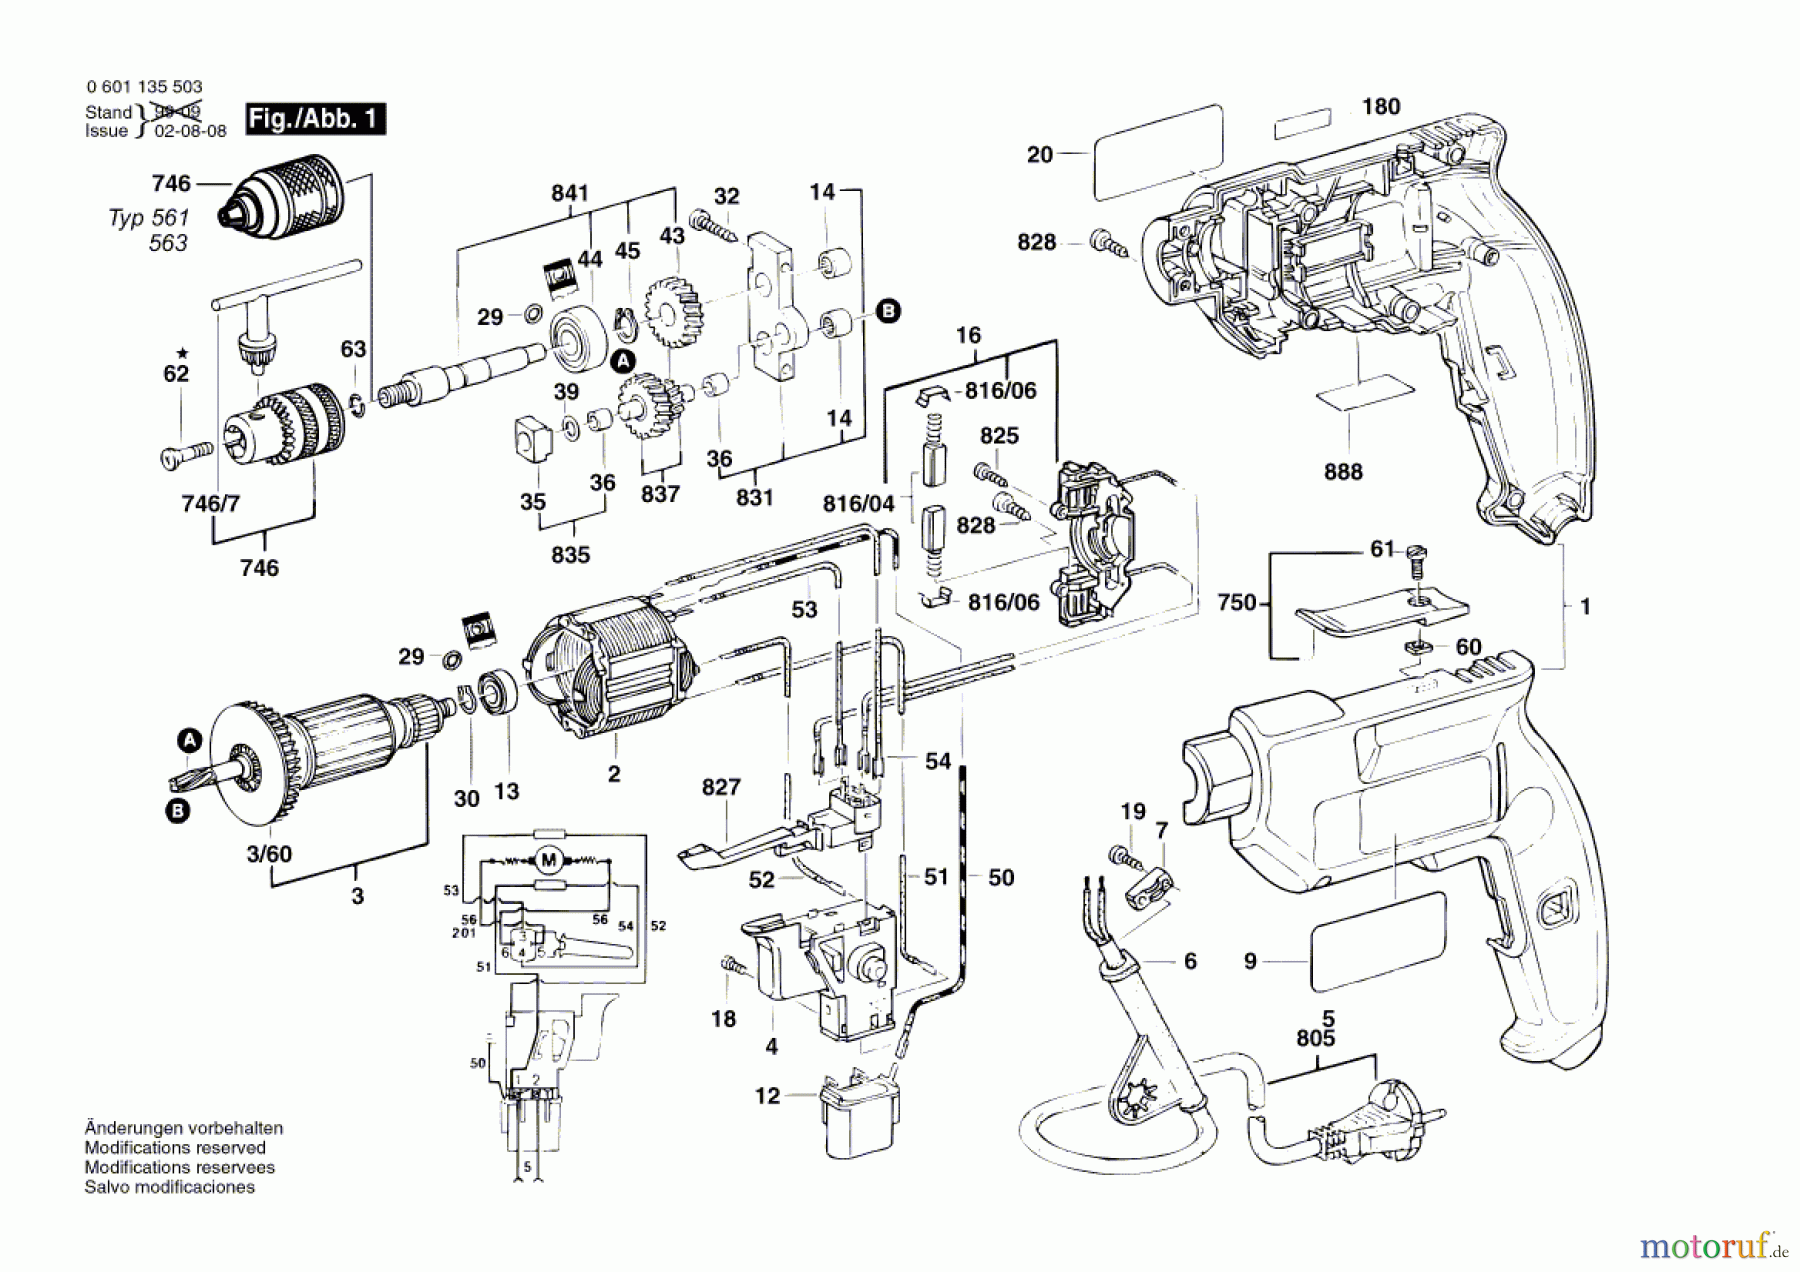  Bosch Werkzeug Bohrmaschine GBM 10 SRE Seite 1